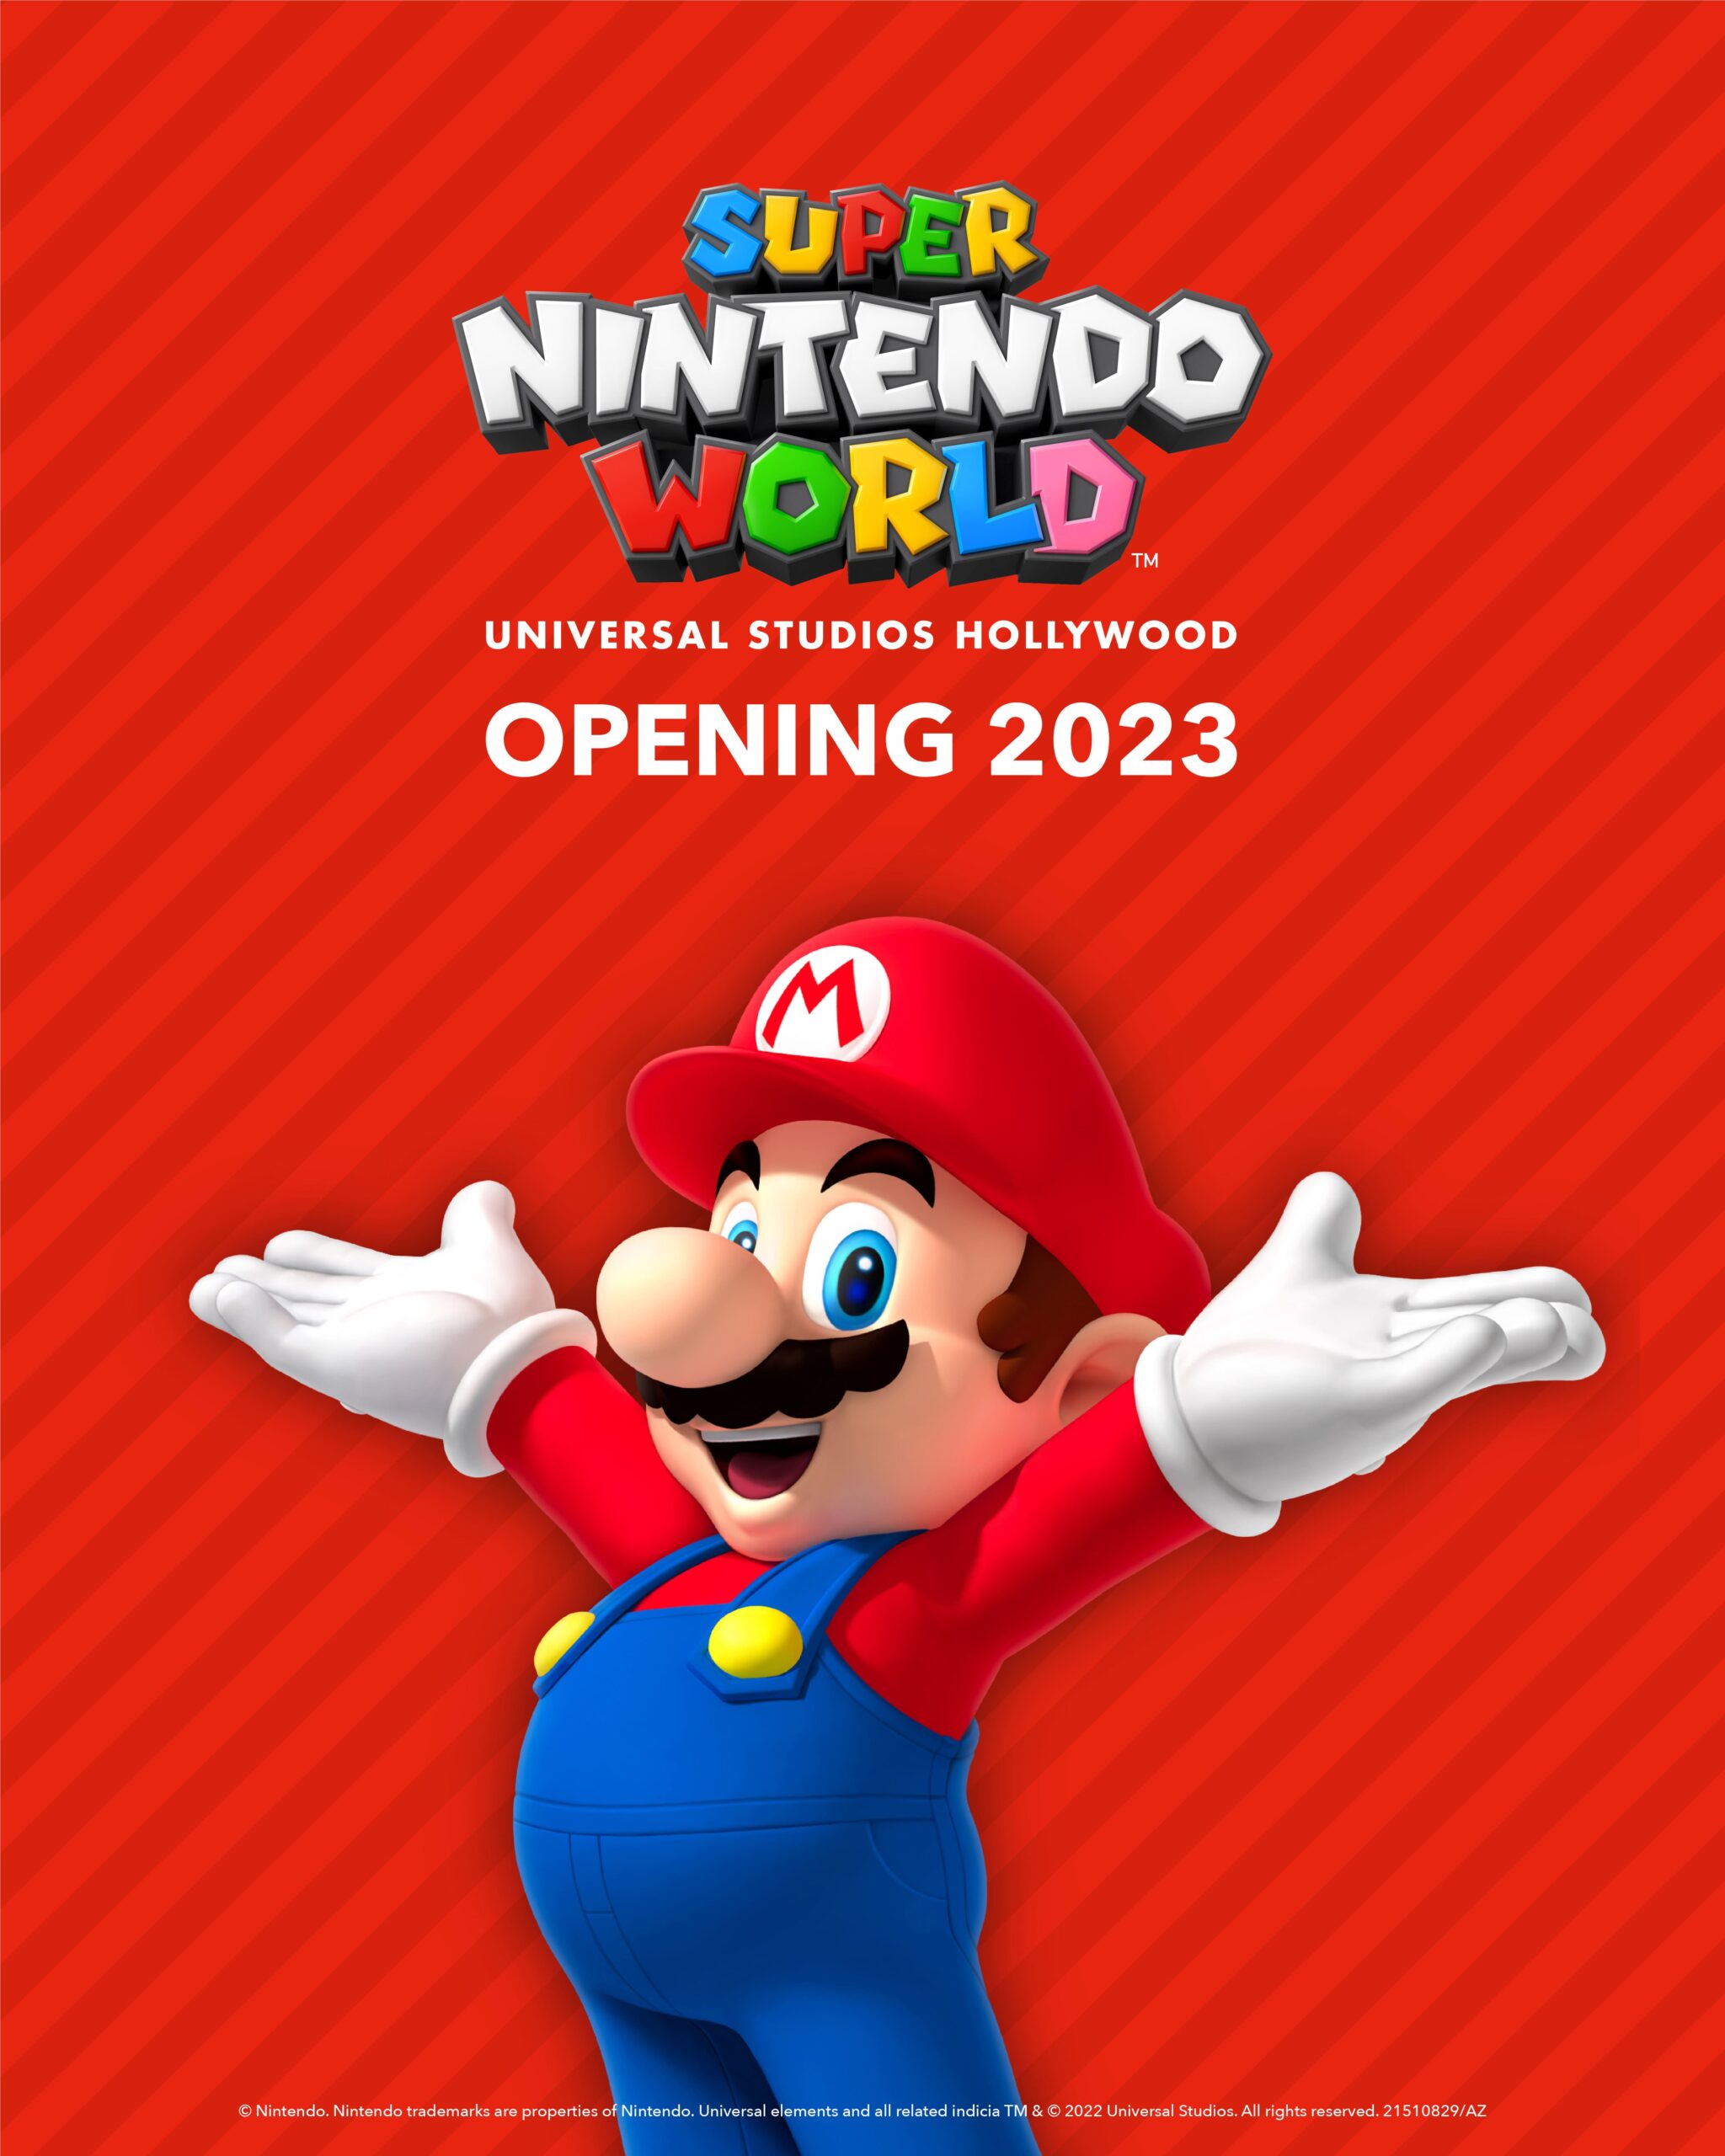 En 2023 abrirá SUPER NINTENDO WORLD en USA